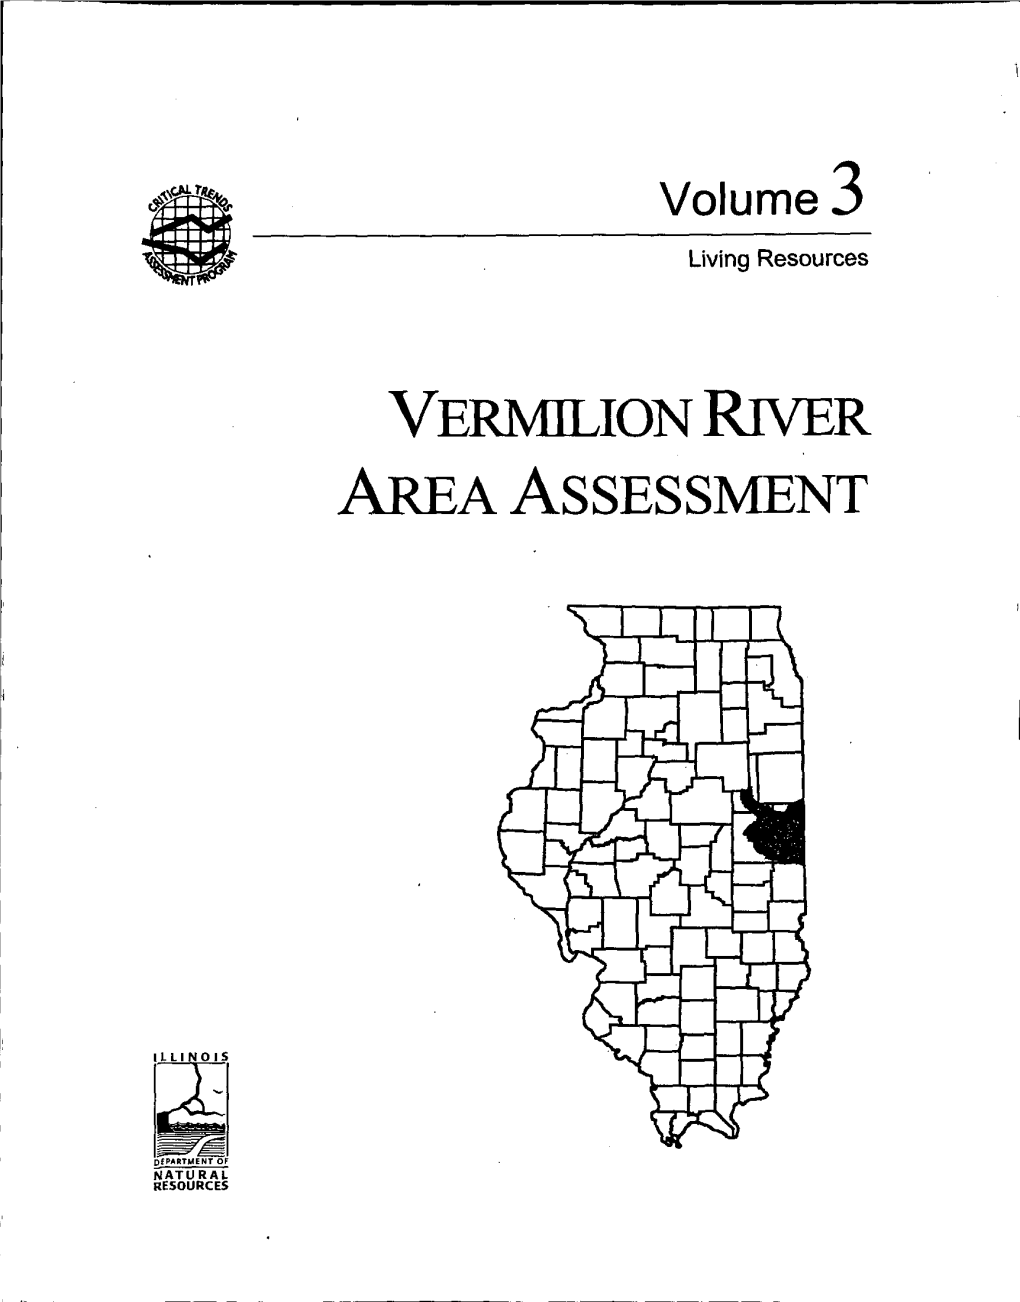 VERMILION River AREA ASSESSMENT VERMILION RIVER AREA ASSESSMENT